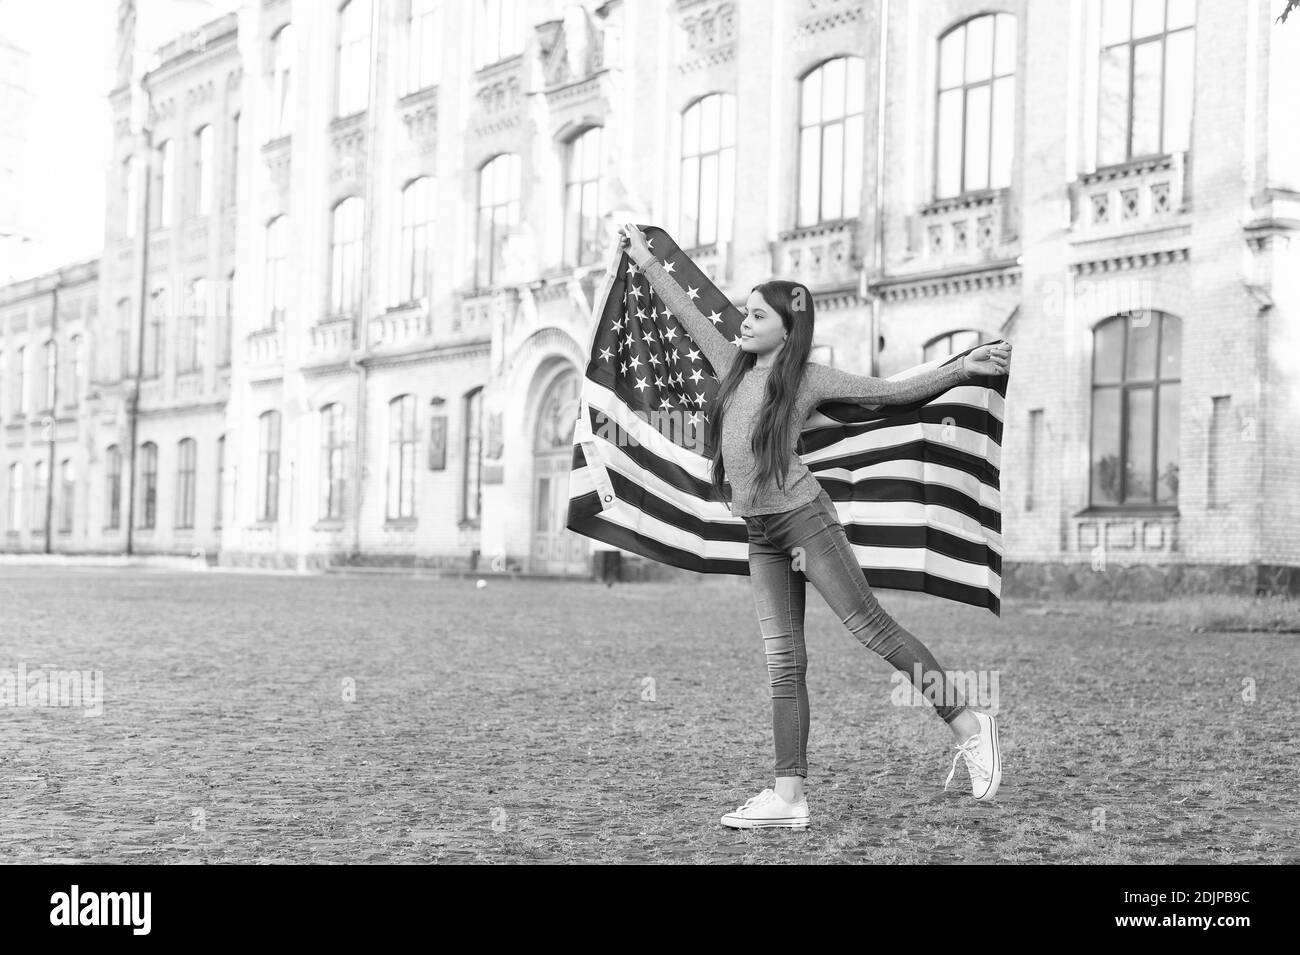 Stolz amerikaner zu sein. Kleines Kind halten amerikanische Flagge. Feiern des Unabhängigkeitstages. Juli. Amerikanische Staatsbürgerschaft. Freiheit und Streben nach Glück. Amerikanisches Leben. Stockfoto